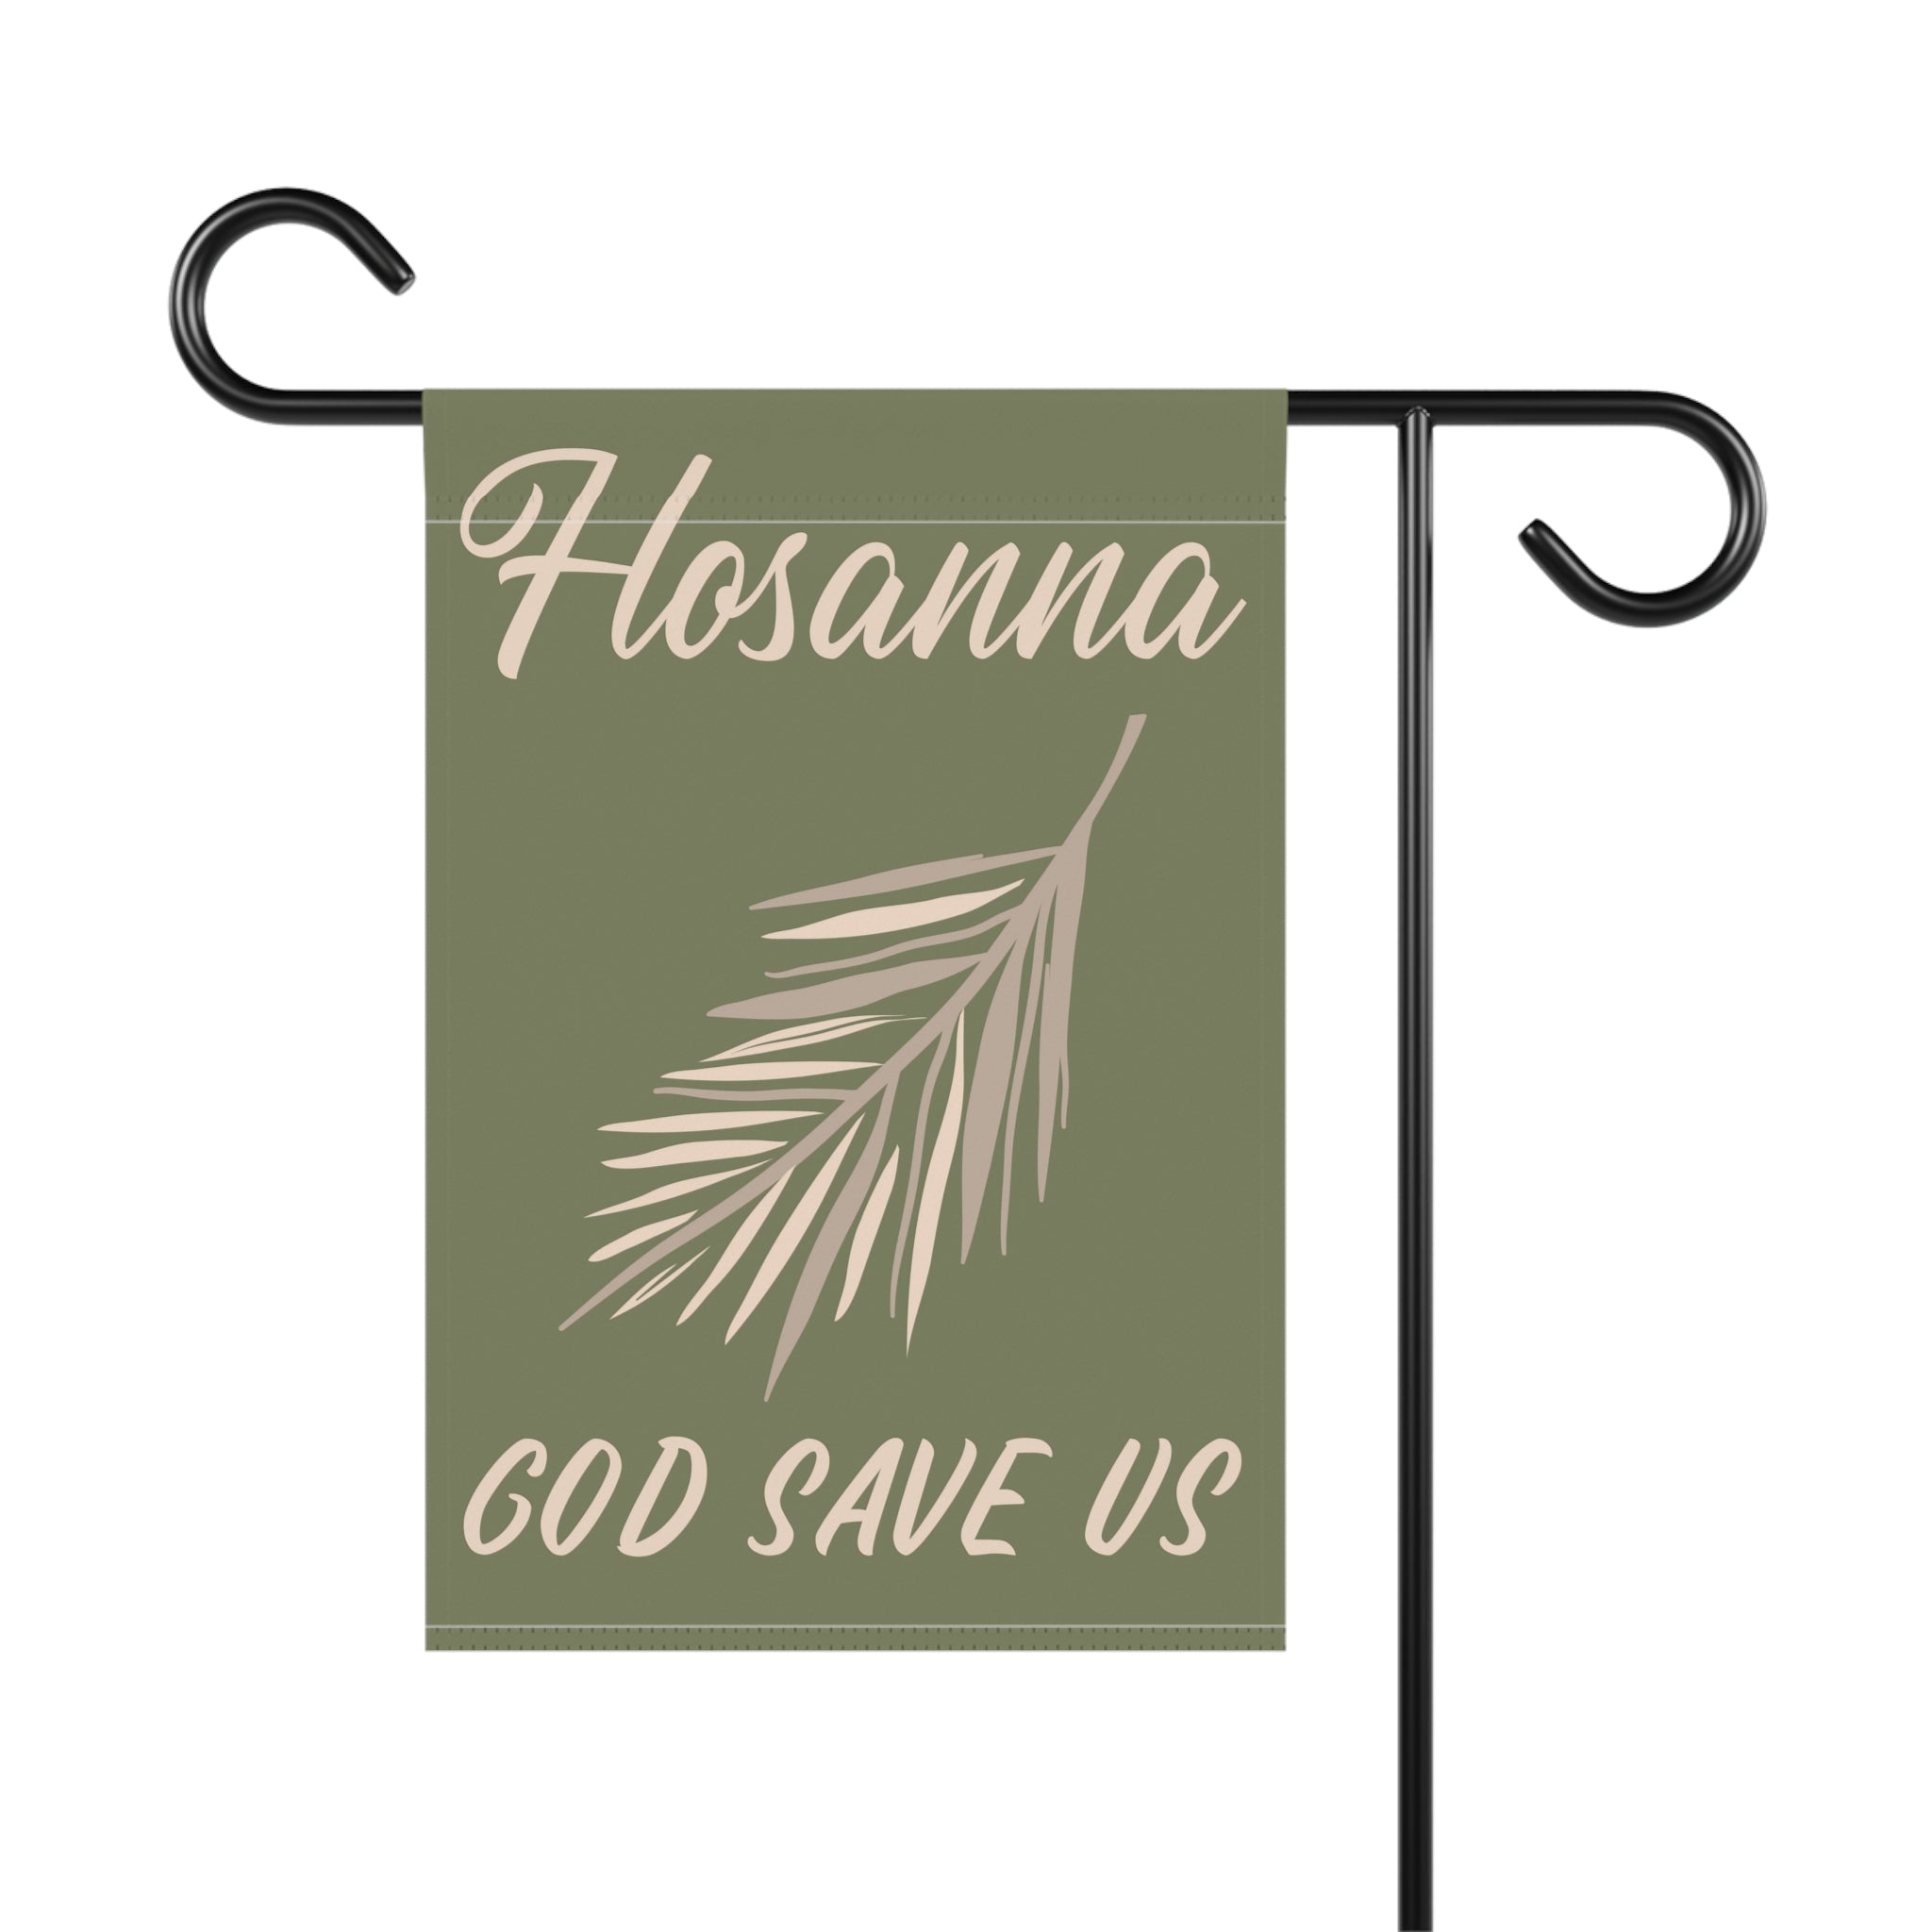 Hosanna - God save us Garden Flag